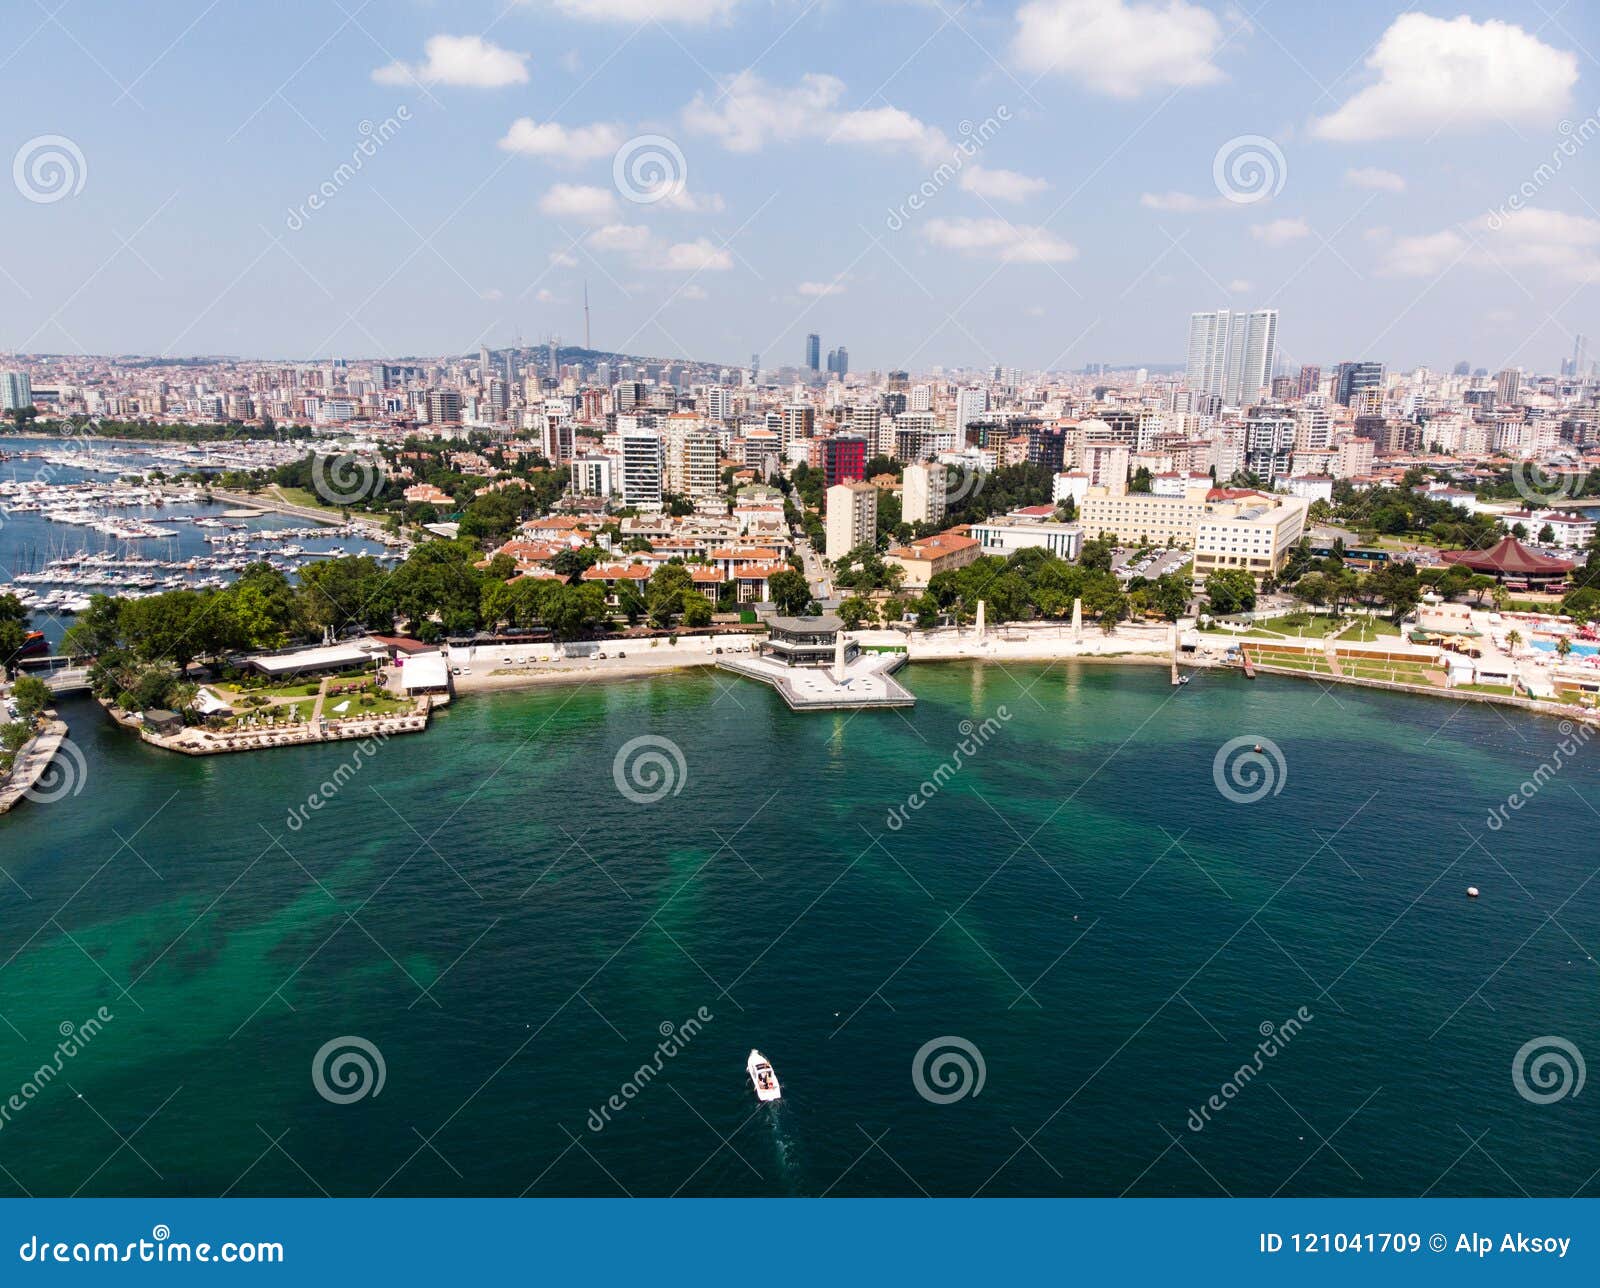 aerial drone view of fenerbahce park in kadikoy / istanbul seaside.